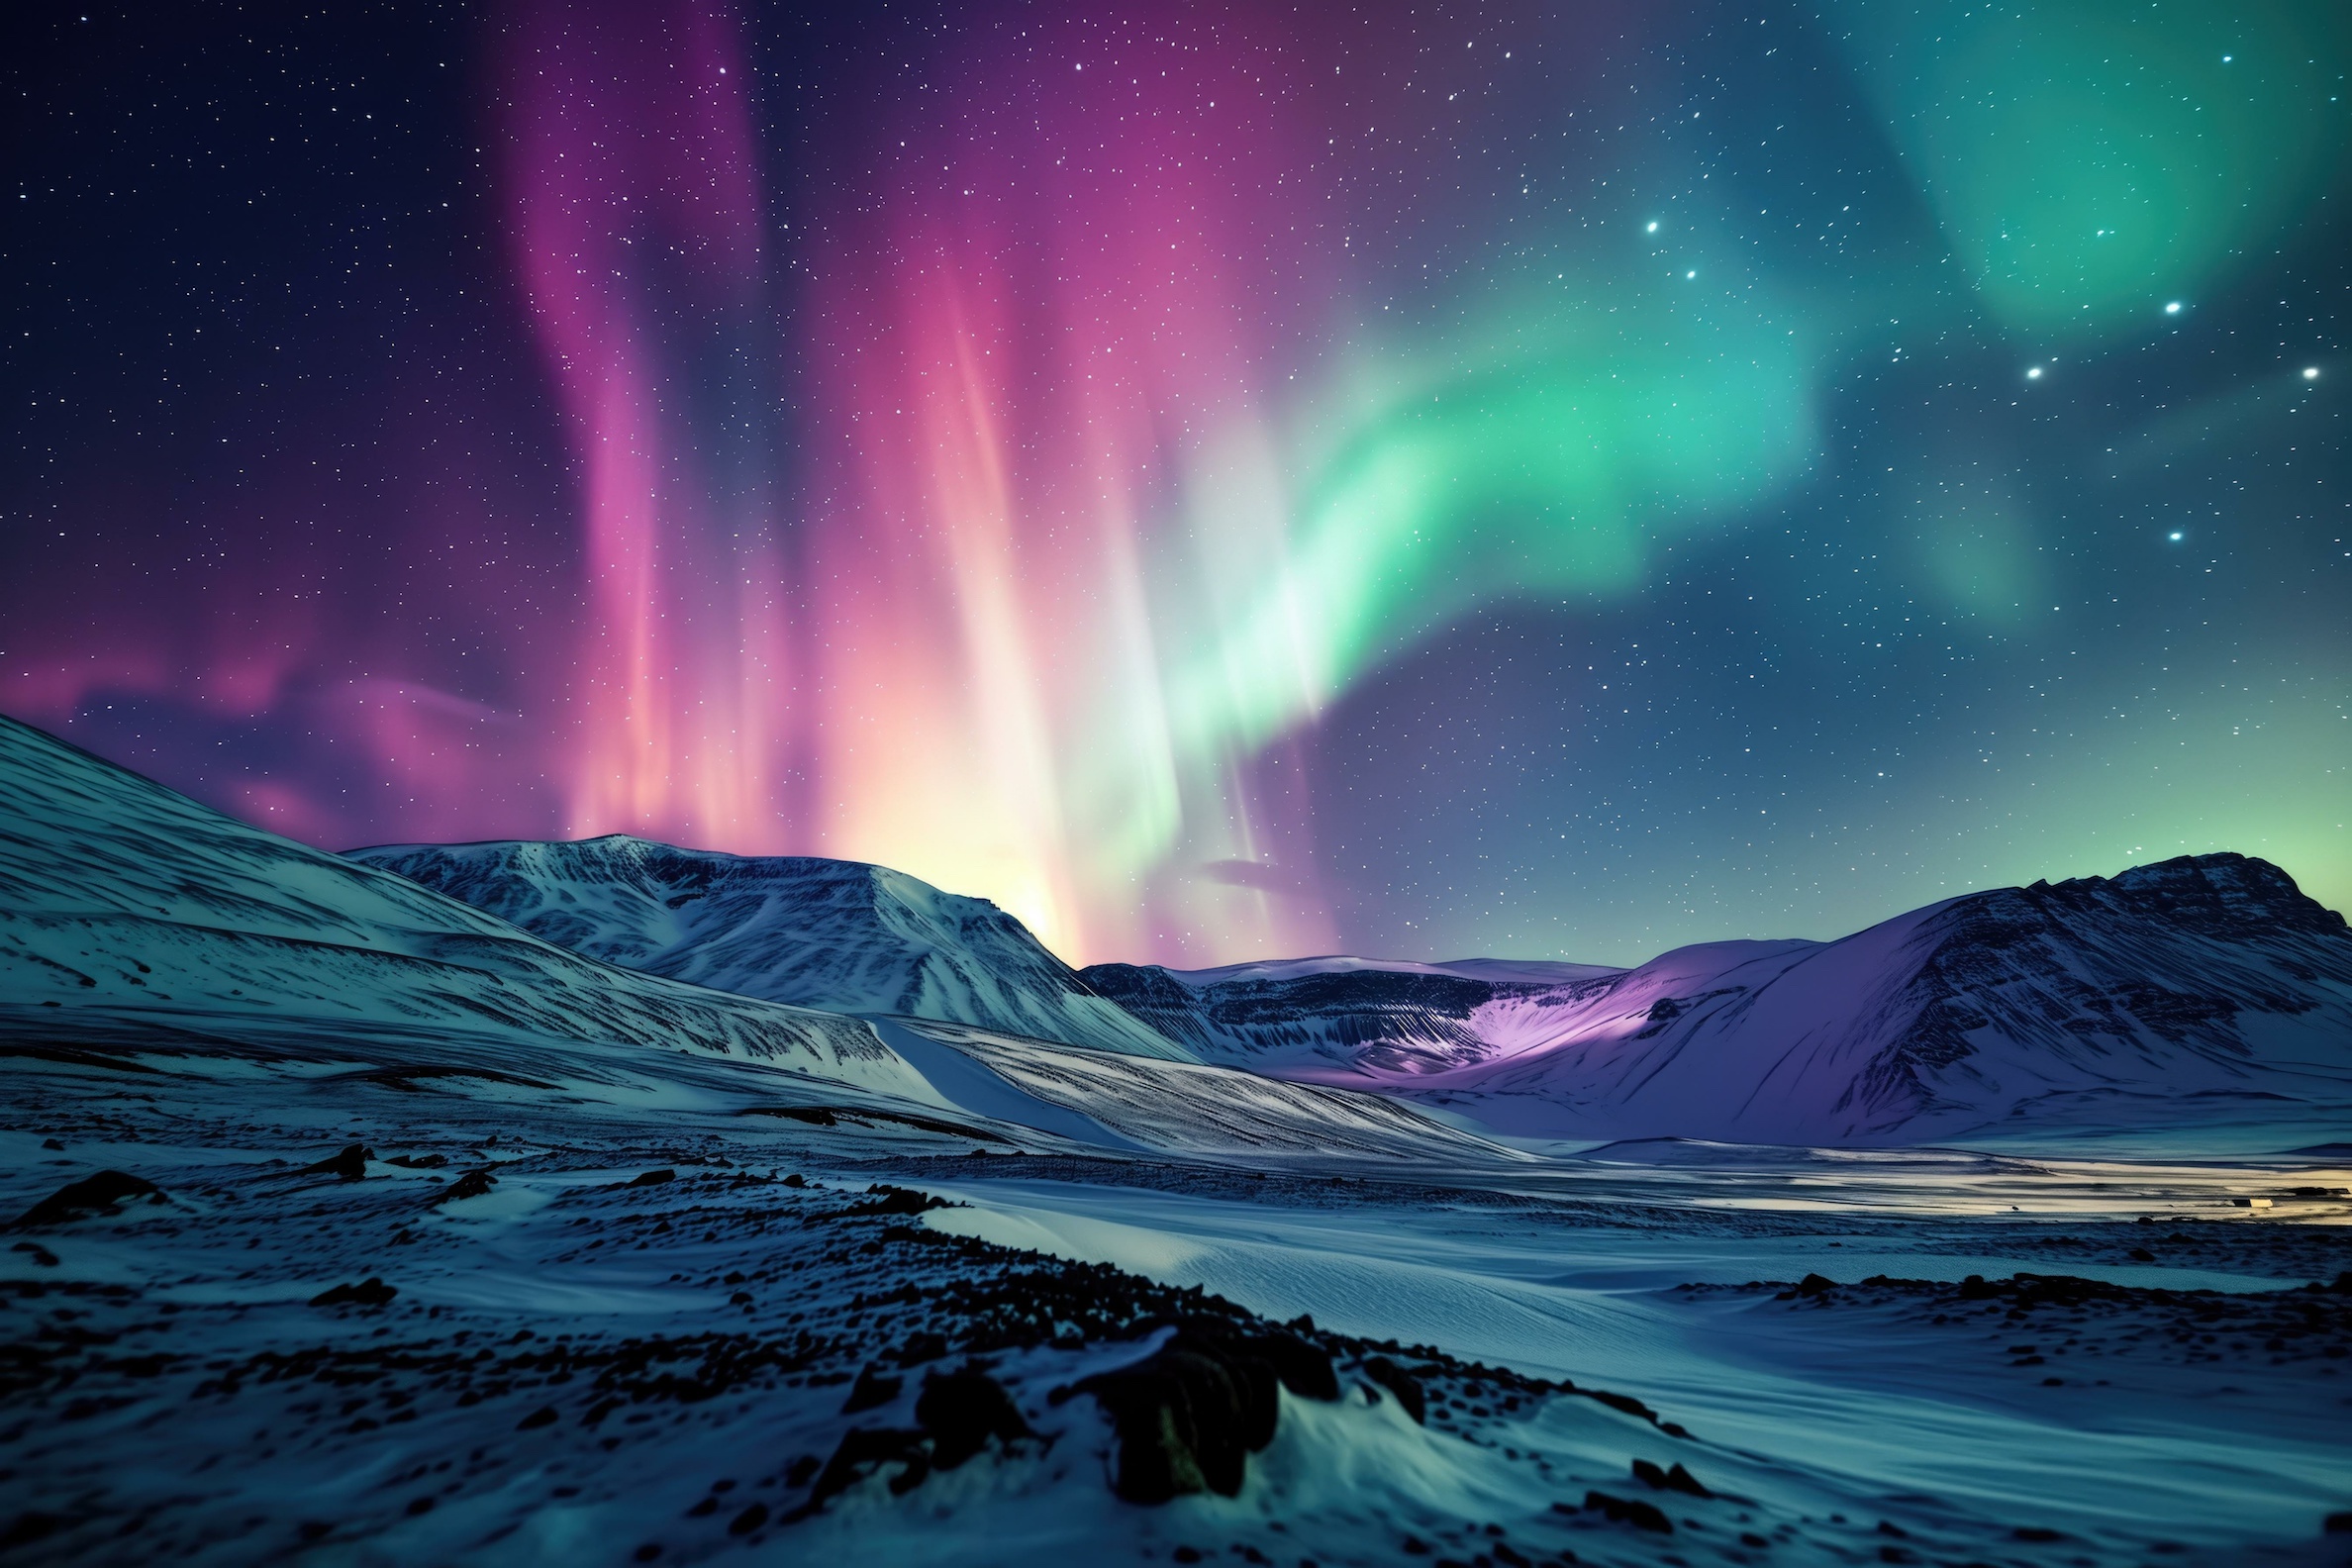 Le champ magnétique, auquel on doit les aurores boréales, existerait depuis au moins 3,7 milliards d'années (image générée par IA). © Skyfe, Adobe Stock